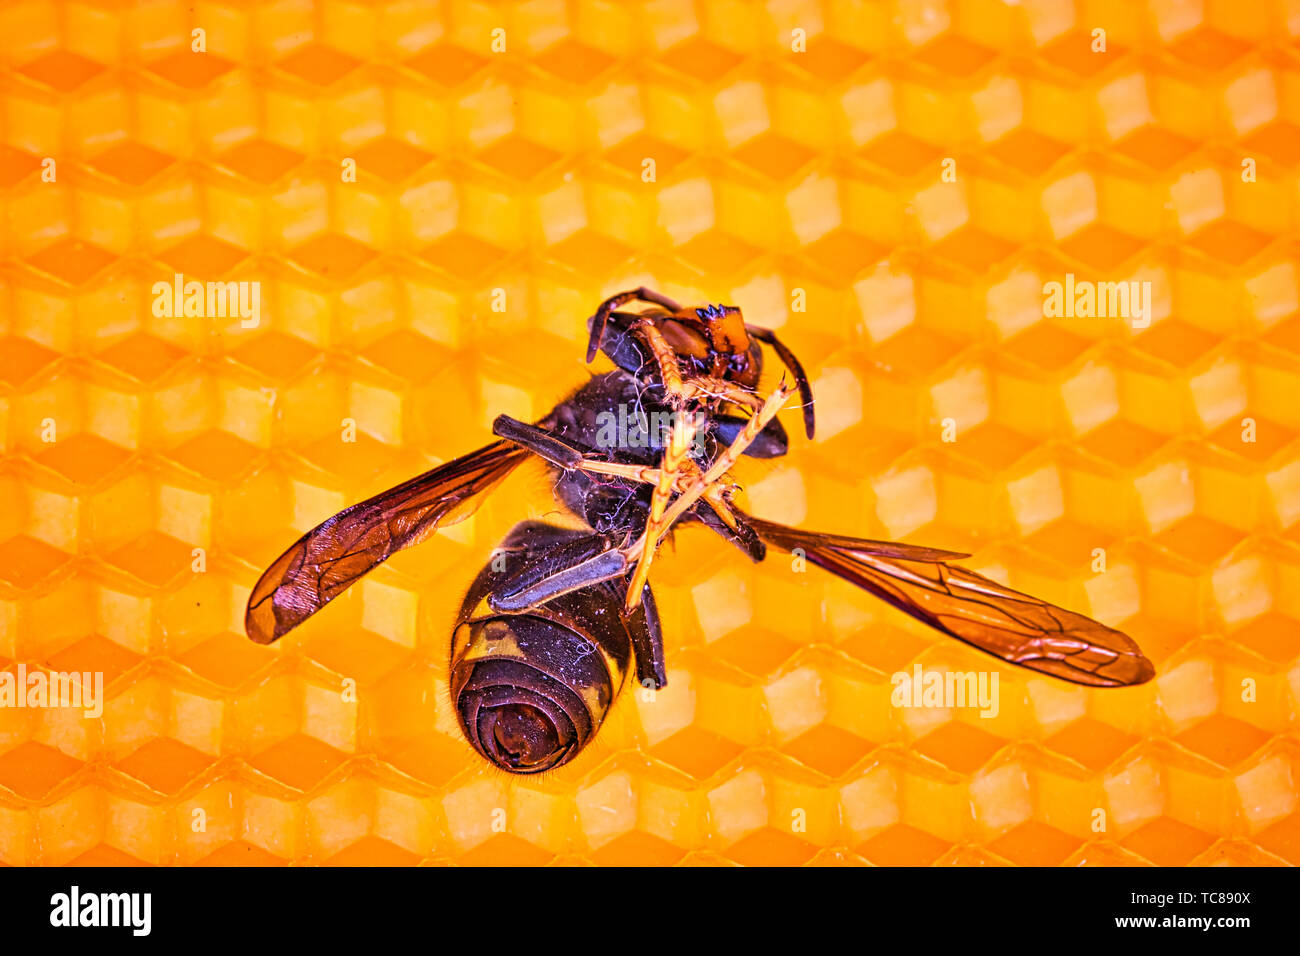 Makrookonomische Bild Der Toten Asiatische Hornissen Auf Einem Neuen Gelb Orange Rahmen Der Bienenstock Sie Sind Verantwortlich Fur Den Tod Der Bienen Kolonie Desaster Fur Natur Wild Li Stockfotografie Alamy